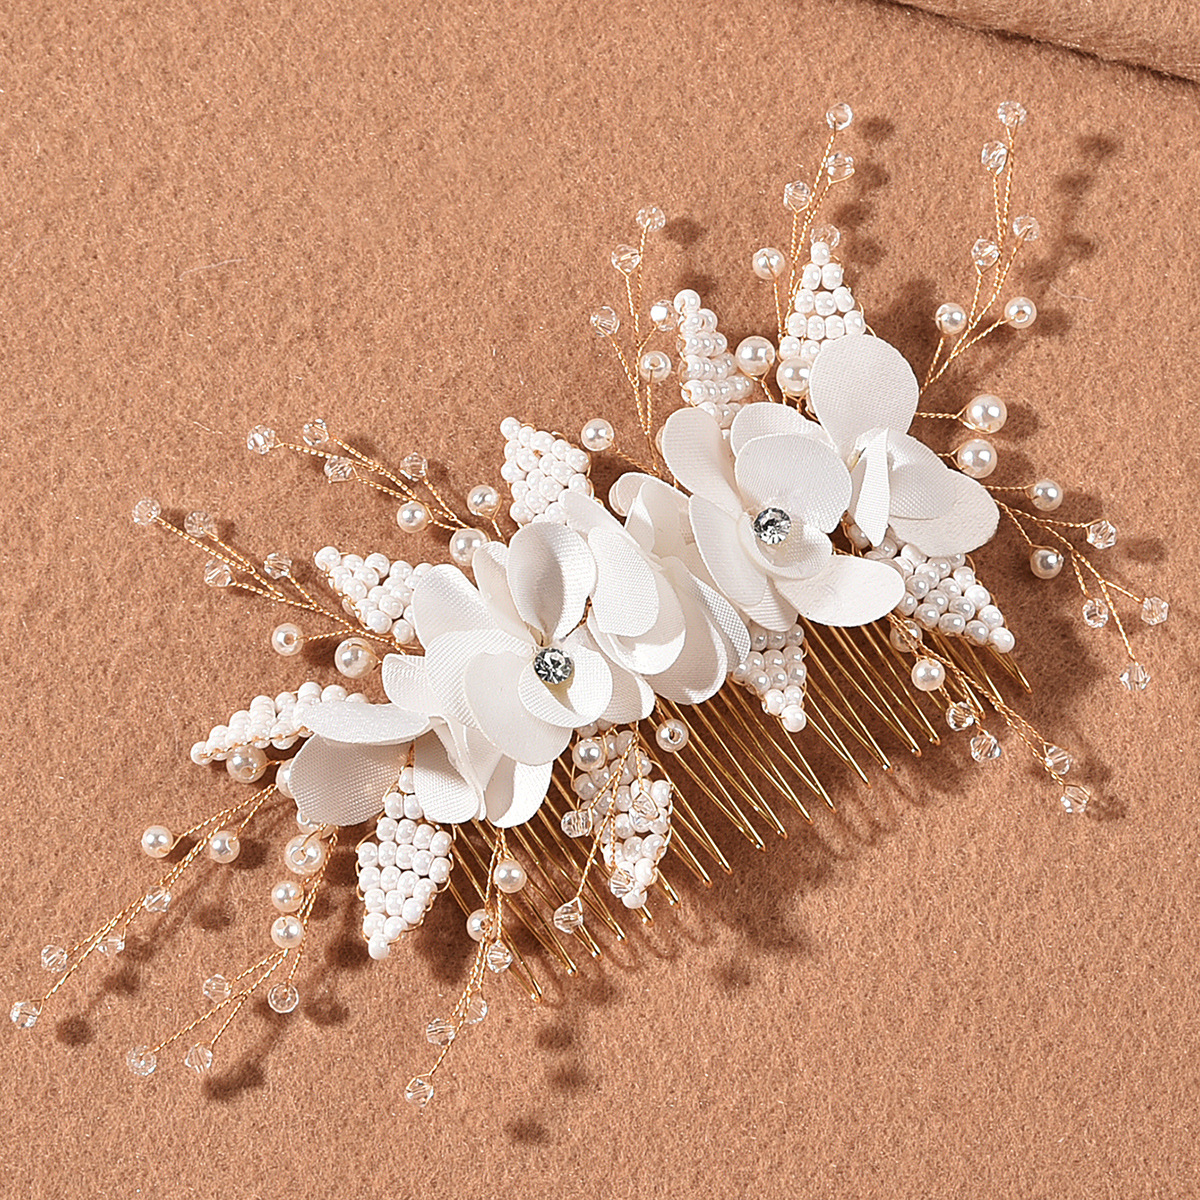 fleur de marie peigne  cheveux simple tte fleur millet perle perle noeud accessoires de mariagepicture1